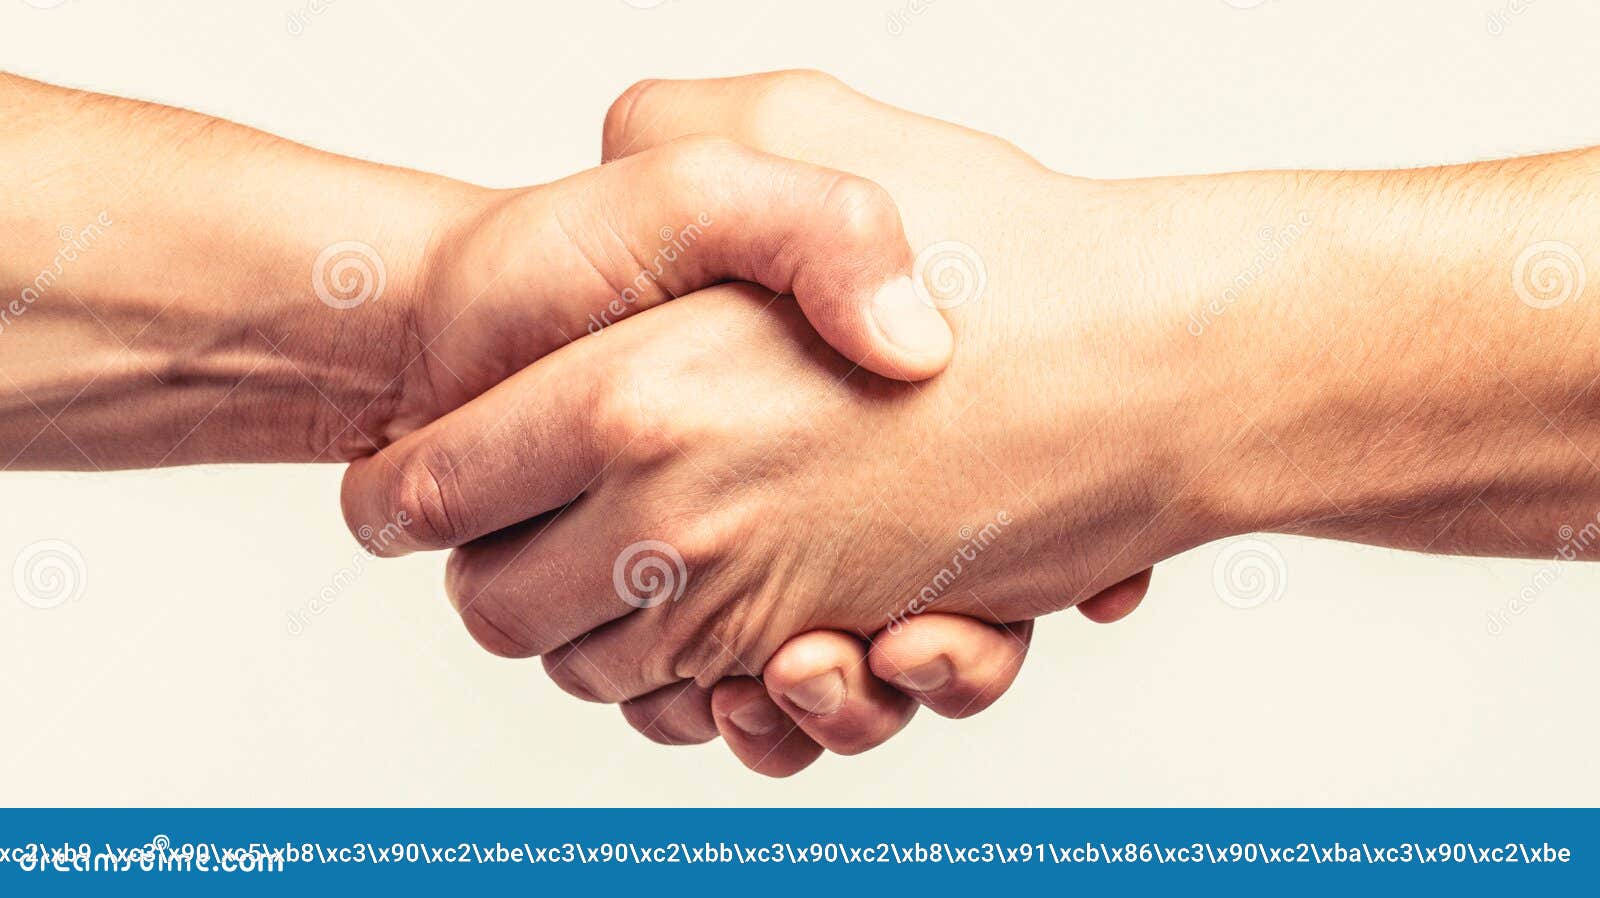 Close friend 3. Дружеское рукопожатие. Дружеское Приветствие руками. Друзья пожимают друг другу руки со словами приветствия.